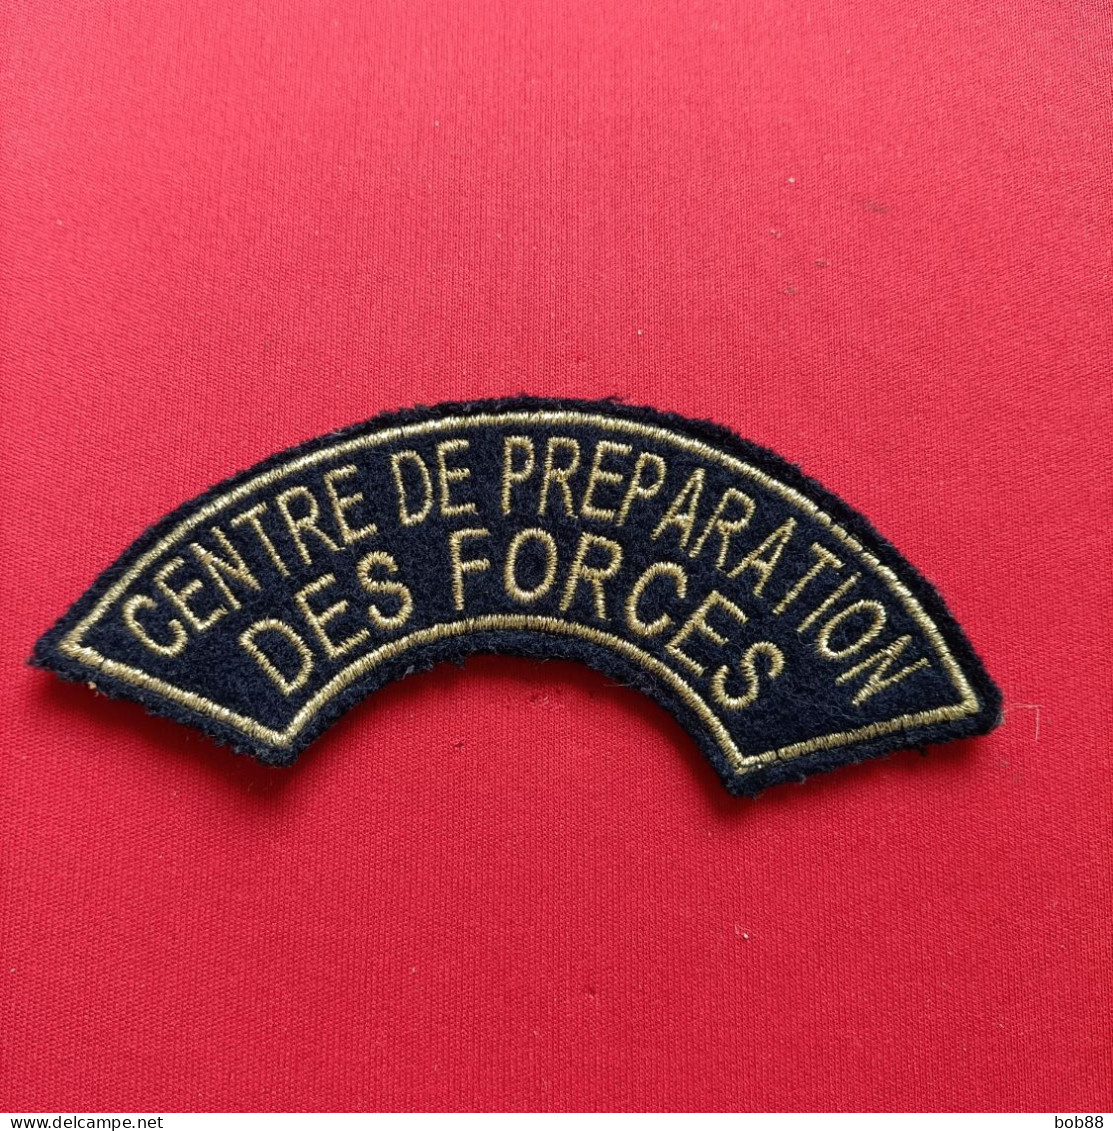 ÉCUSSON BRODÉ / CENTRE DE PRÉPARATION DES FORCES / MAILLY - Blazoenen (textiel)